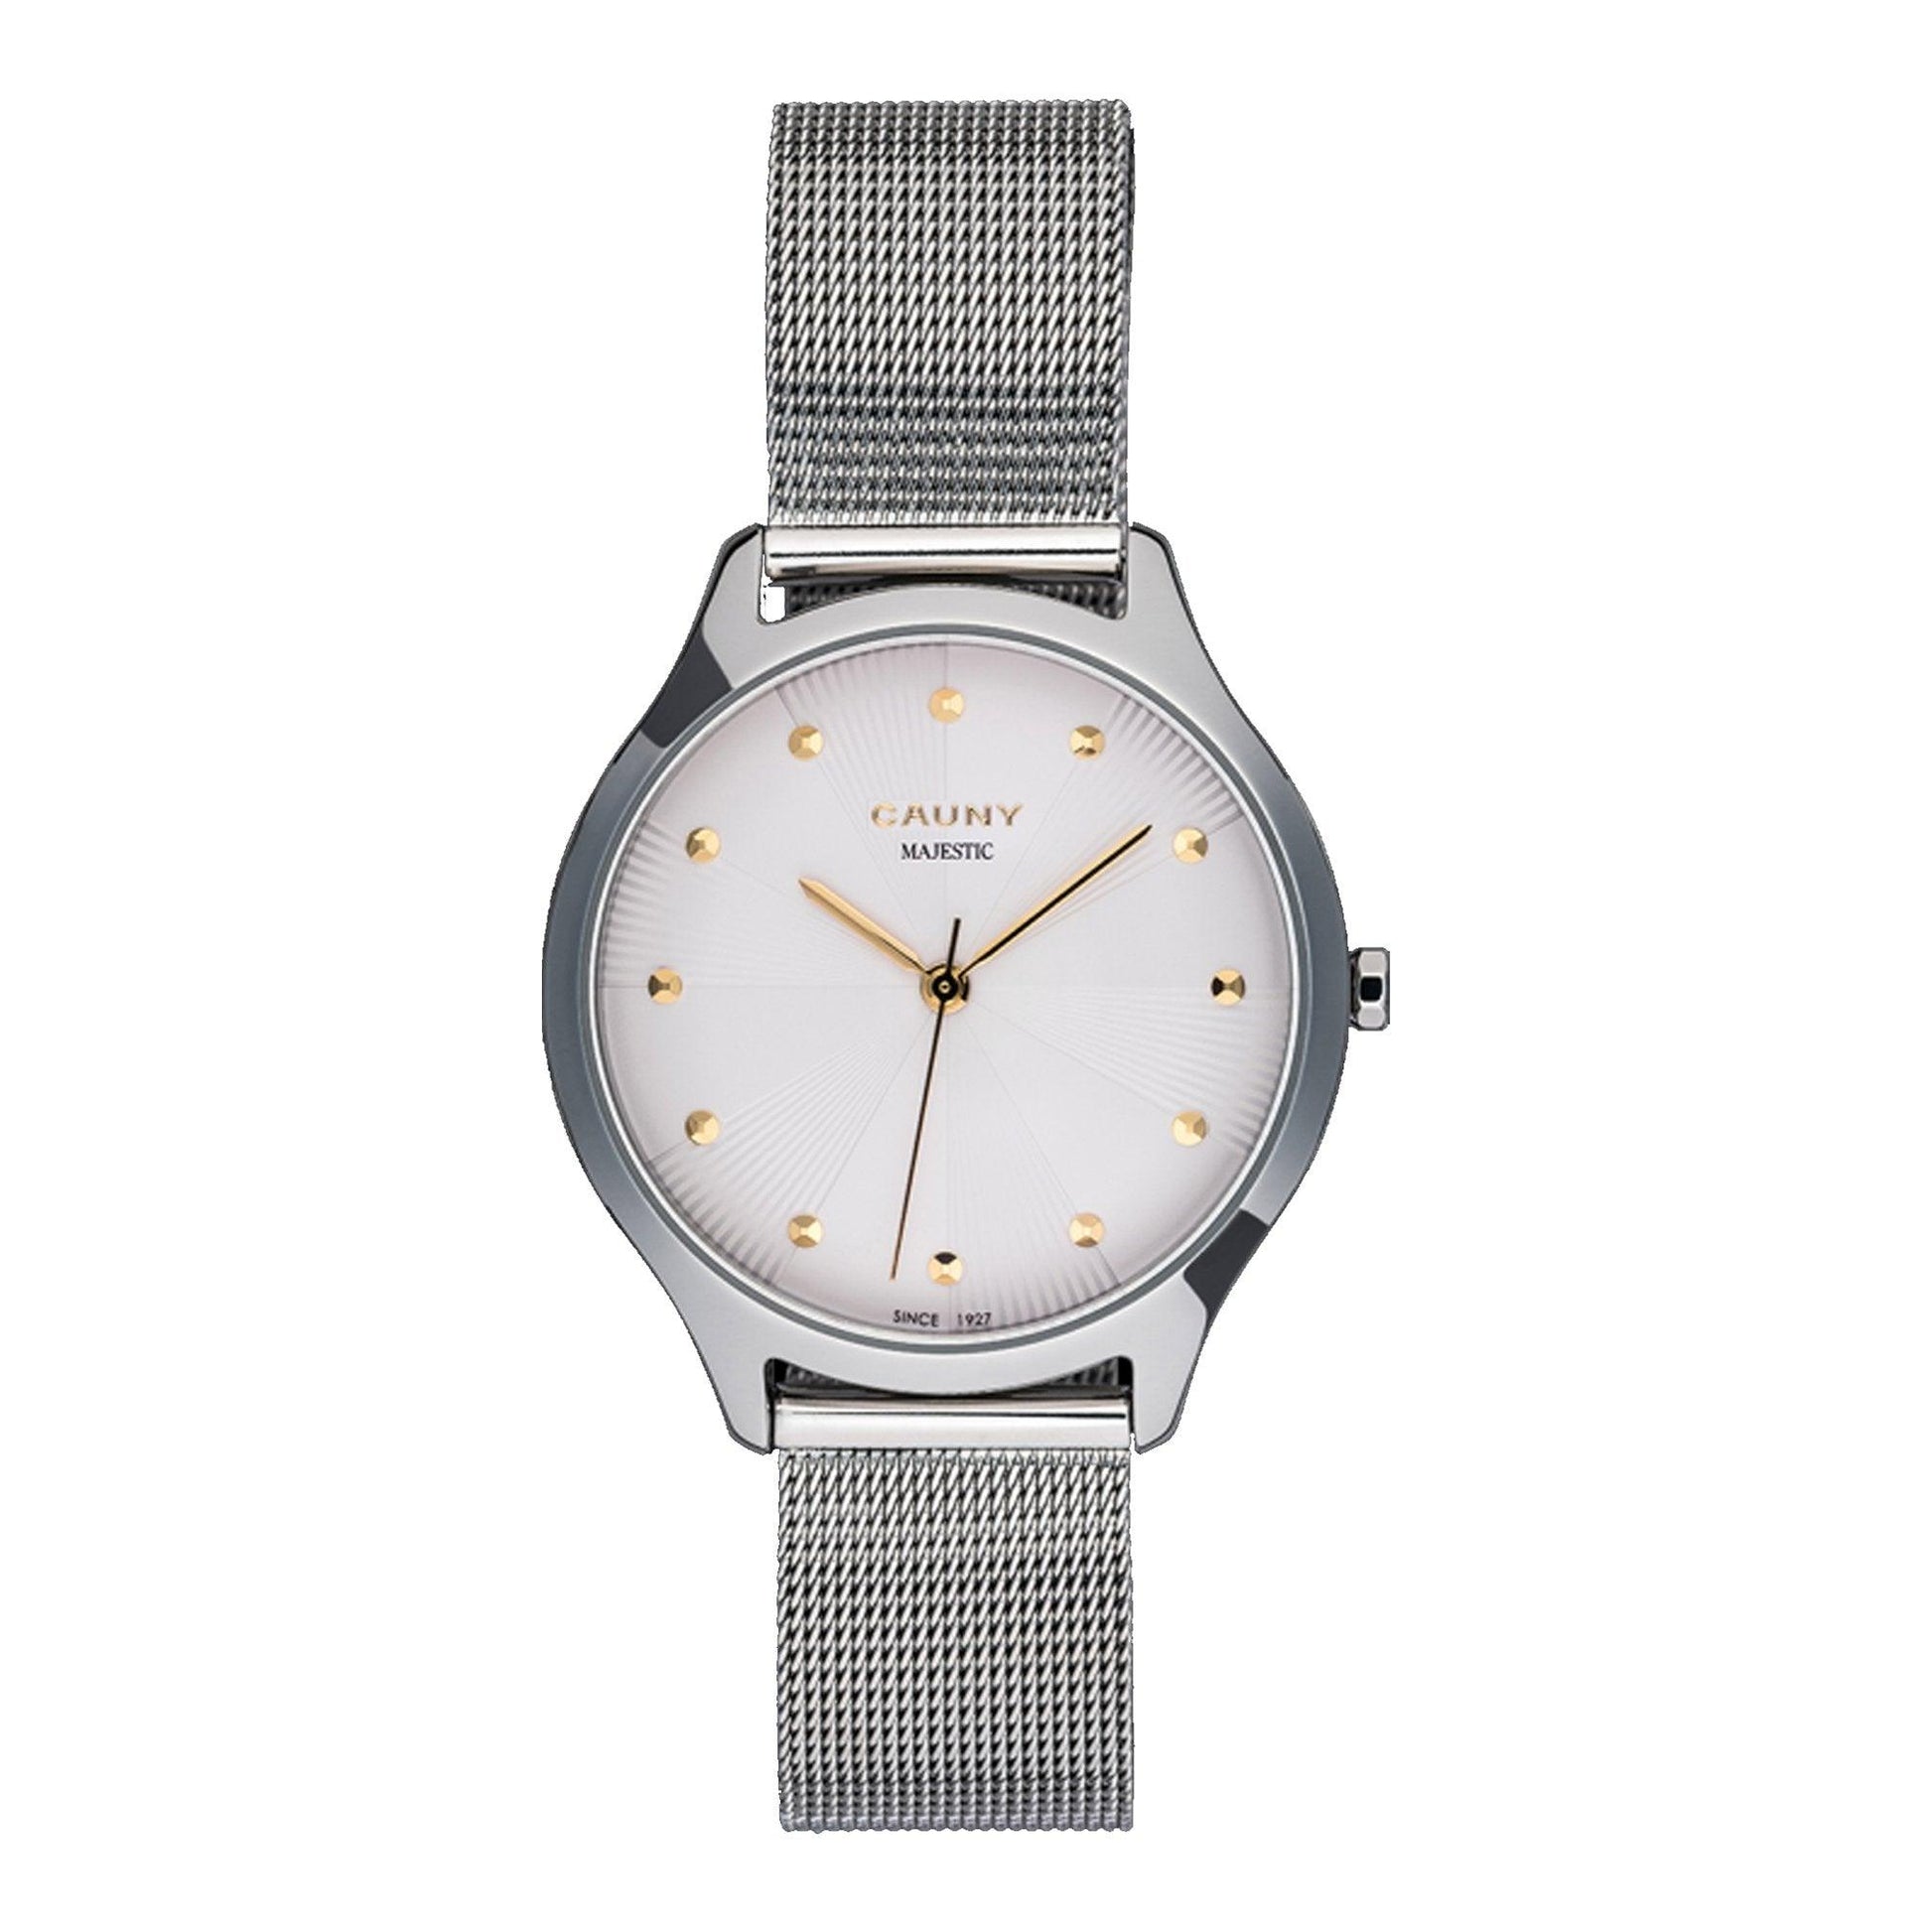 Cauny Majestic Patterns CMJ001 orologio donna al quarzo - Kechiq Concept Boutique